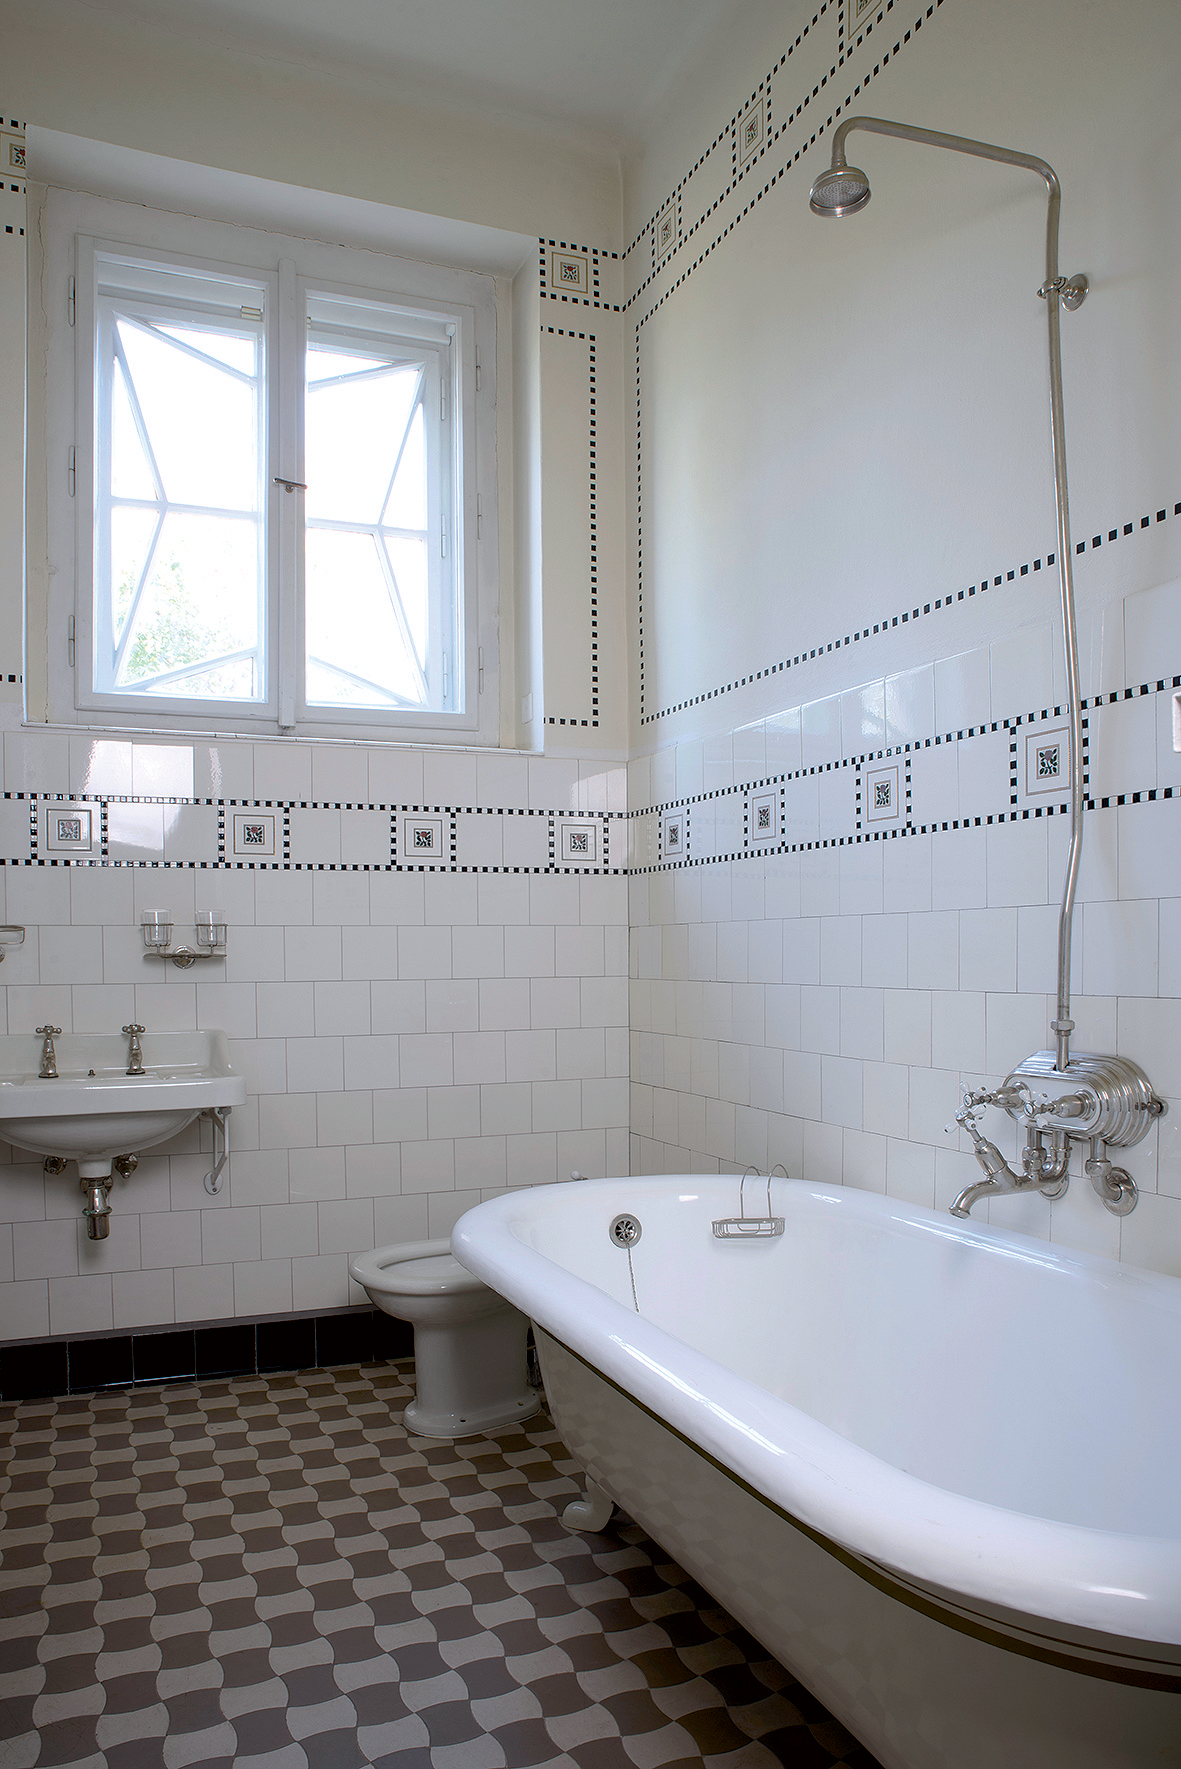 Zachovala se originální koupelna včetně původní vany a části obkladů